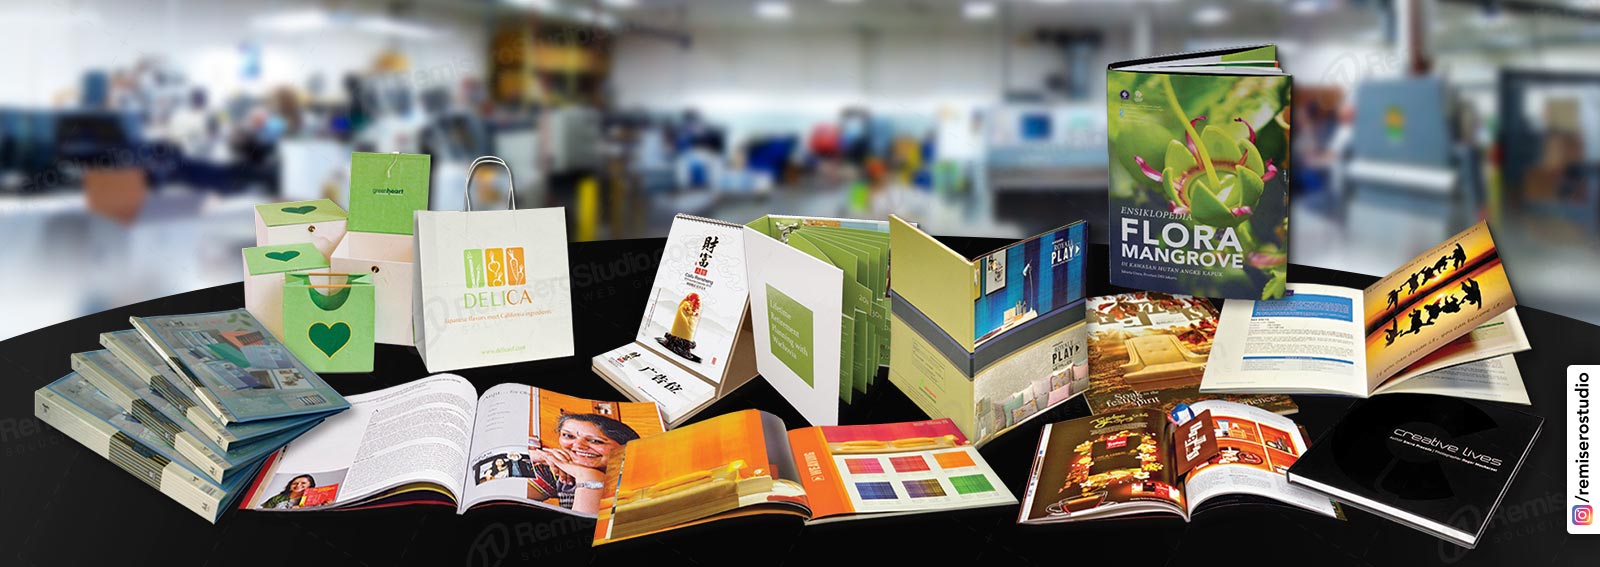 educador Escoger crecimiento Imprenta Gráfica: Servicio de Impresión para Empresas en Lima Perú |  Imprenta Online | RemiseroStudio.com